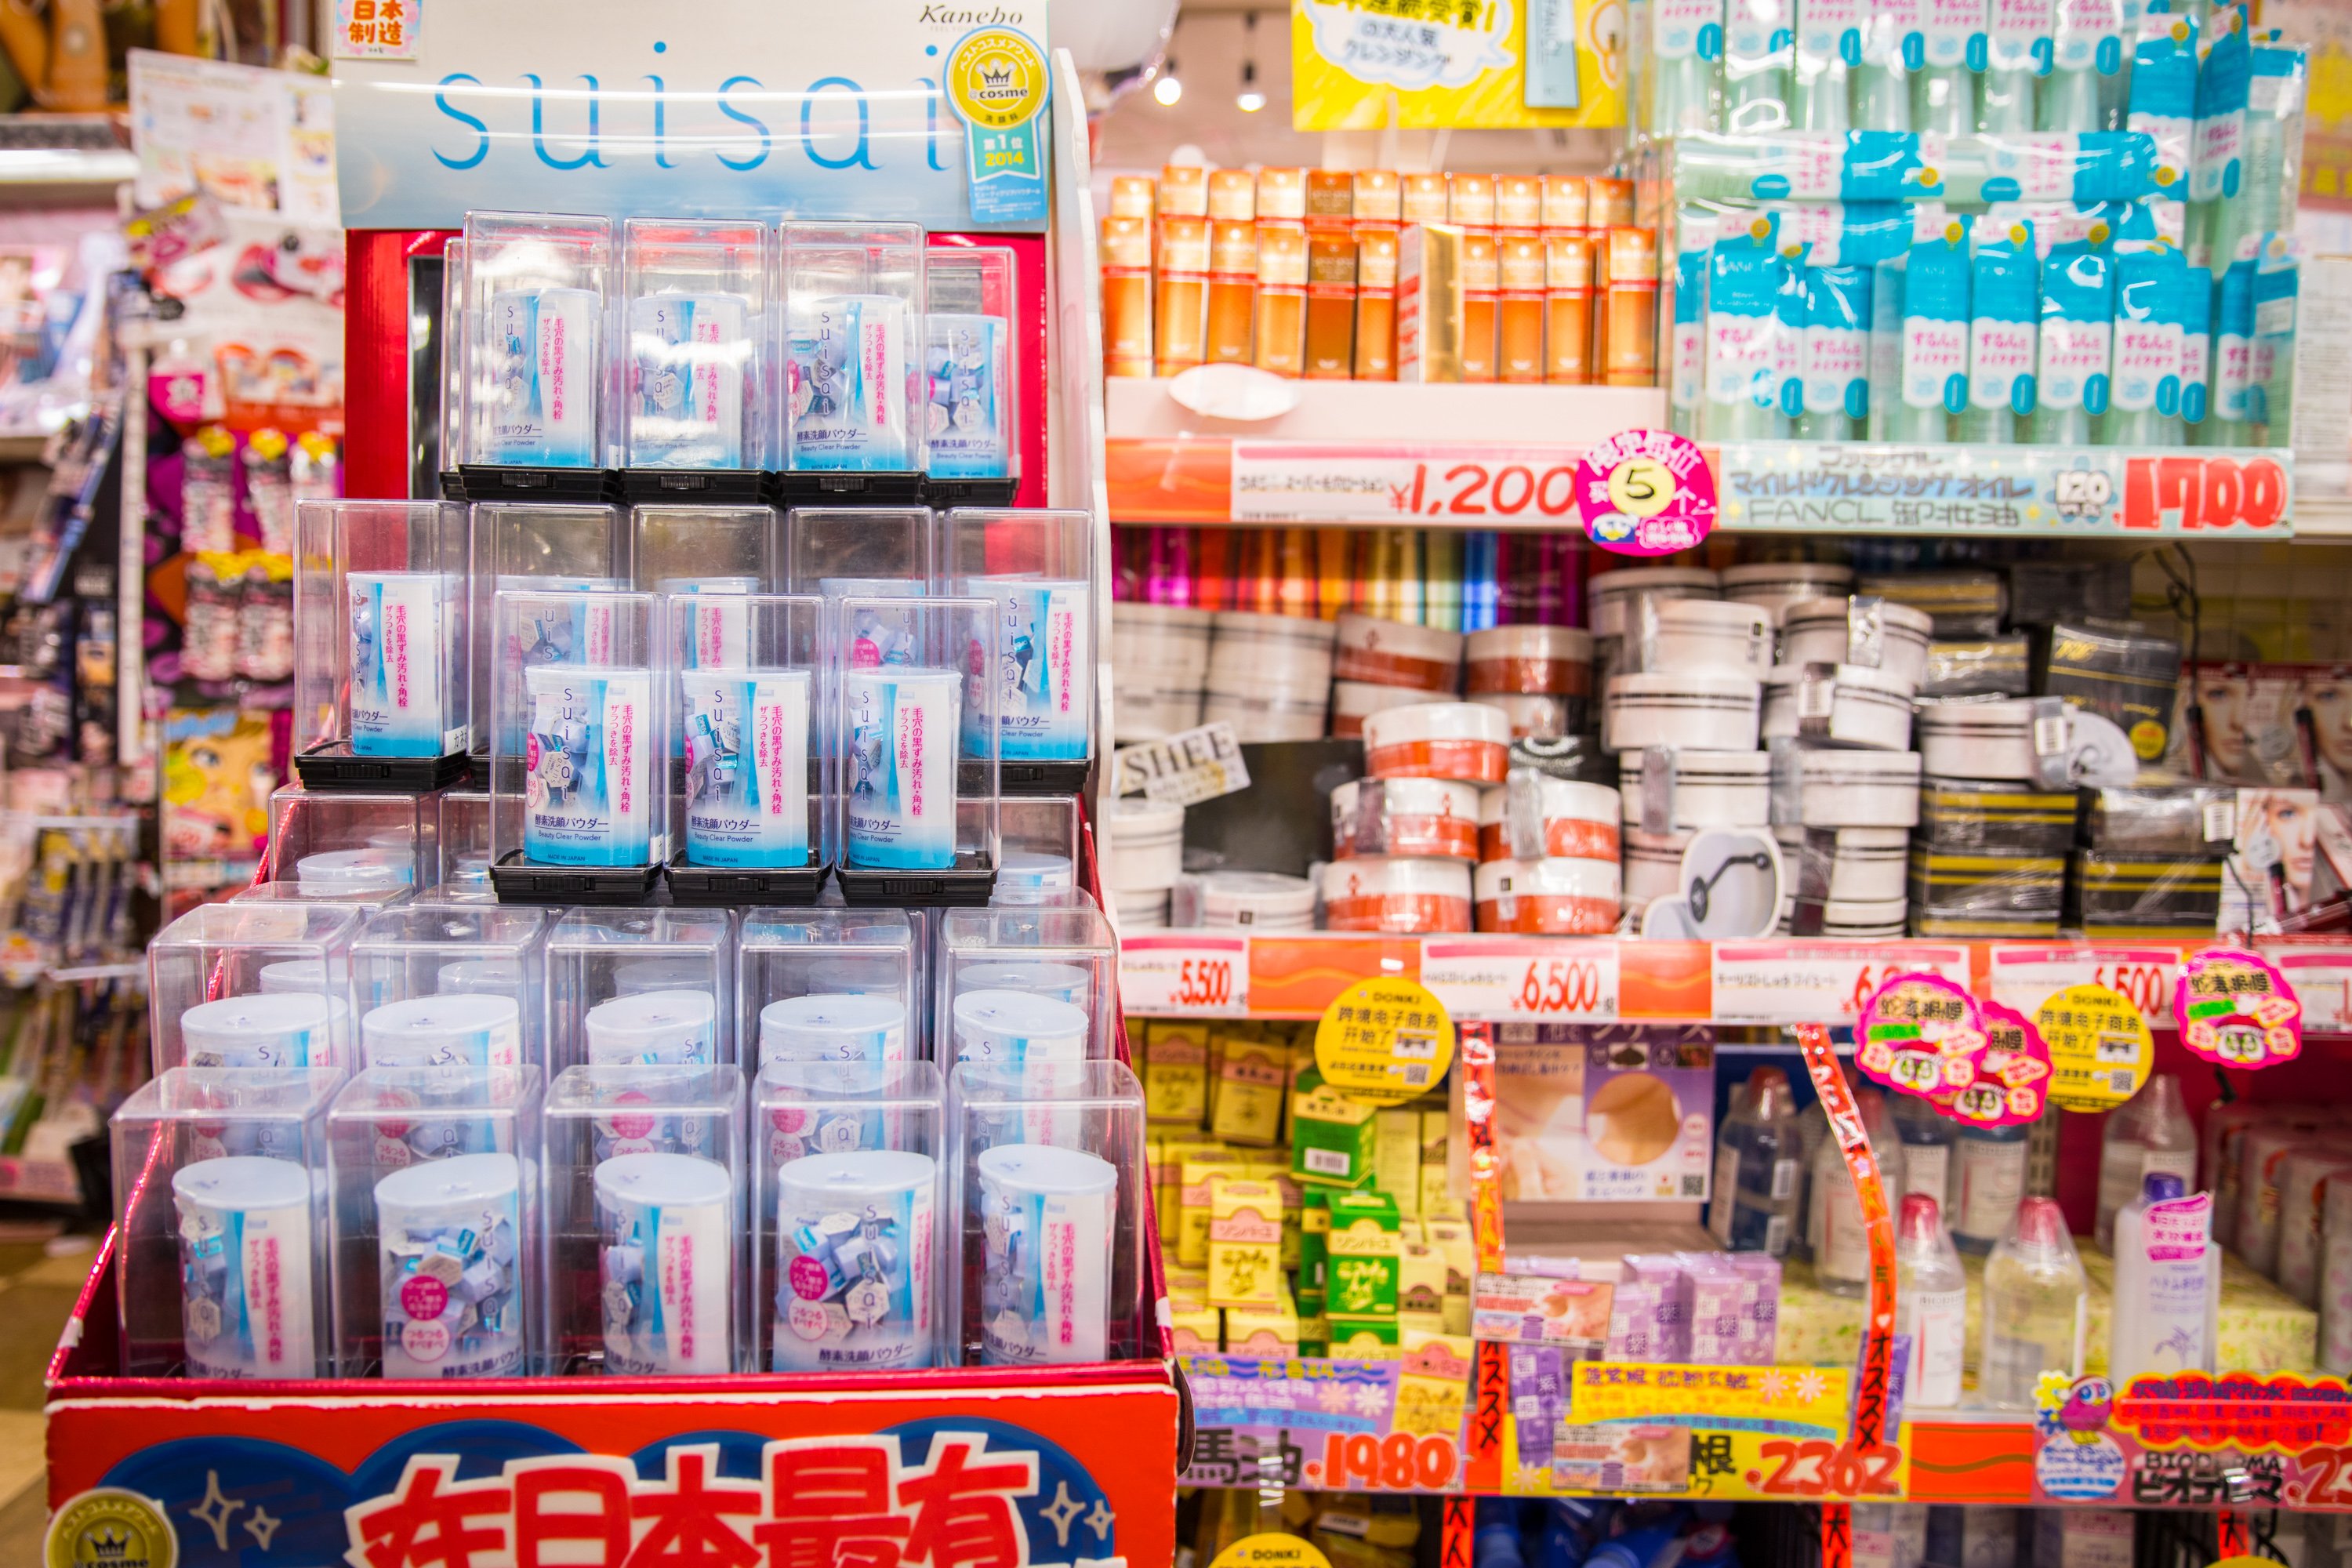 日本亚马逊攻略:日本三大类医药品具体分析-全球去哪买